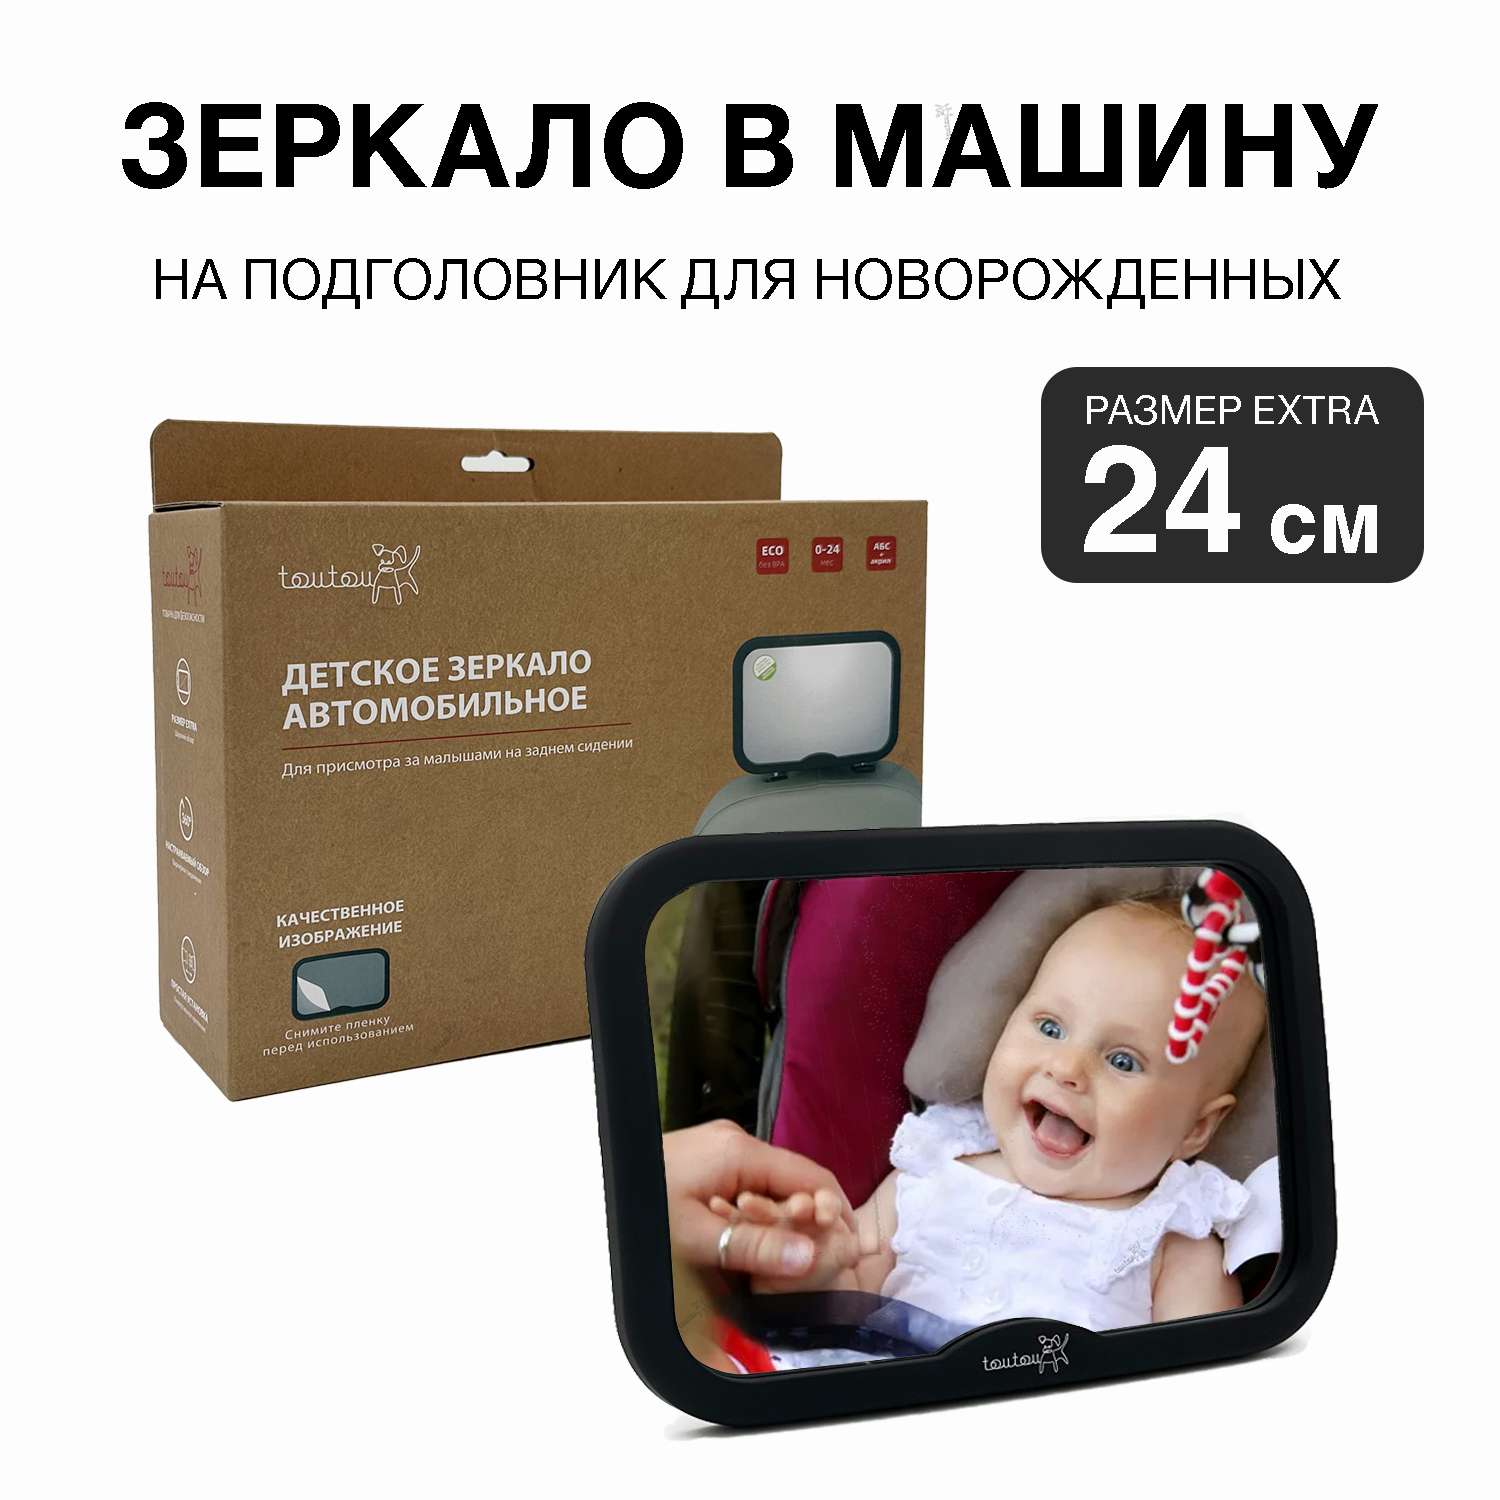 Зеркало в машину для детей Toutou Зеркало в машину для наблюдения и контроля за новорожденными детьми - фото 1